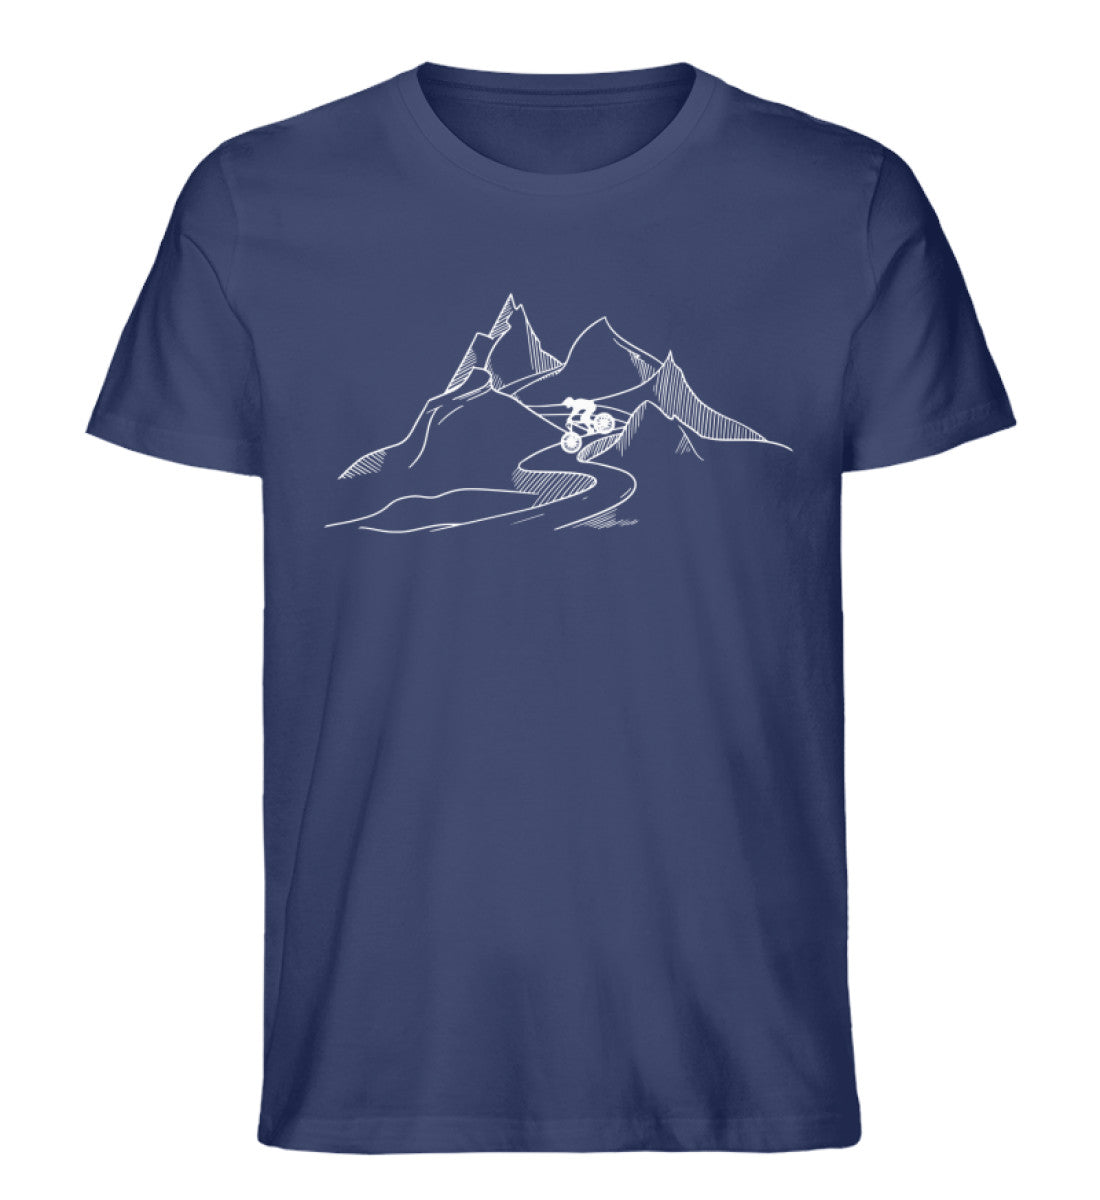 Downhill - Herren Organic T-Shirt mountainbike Navyblau